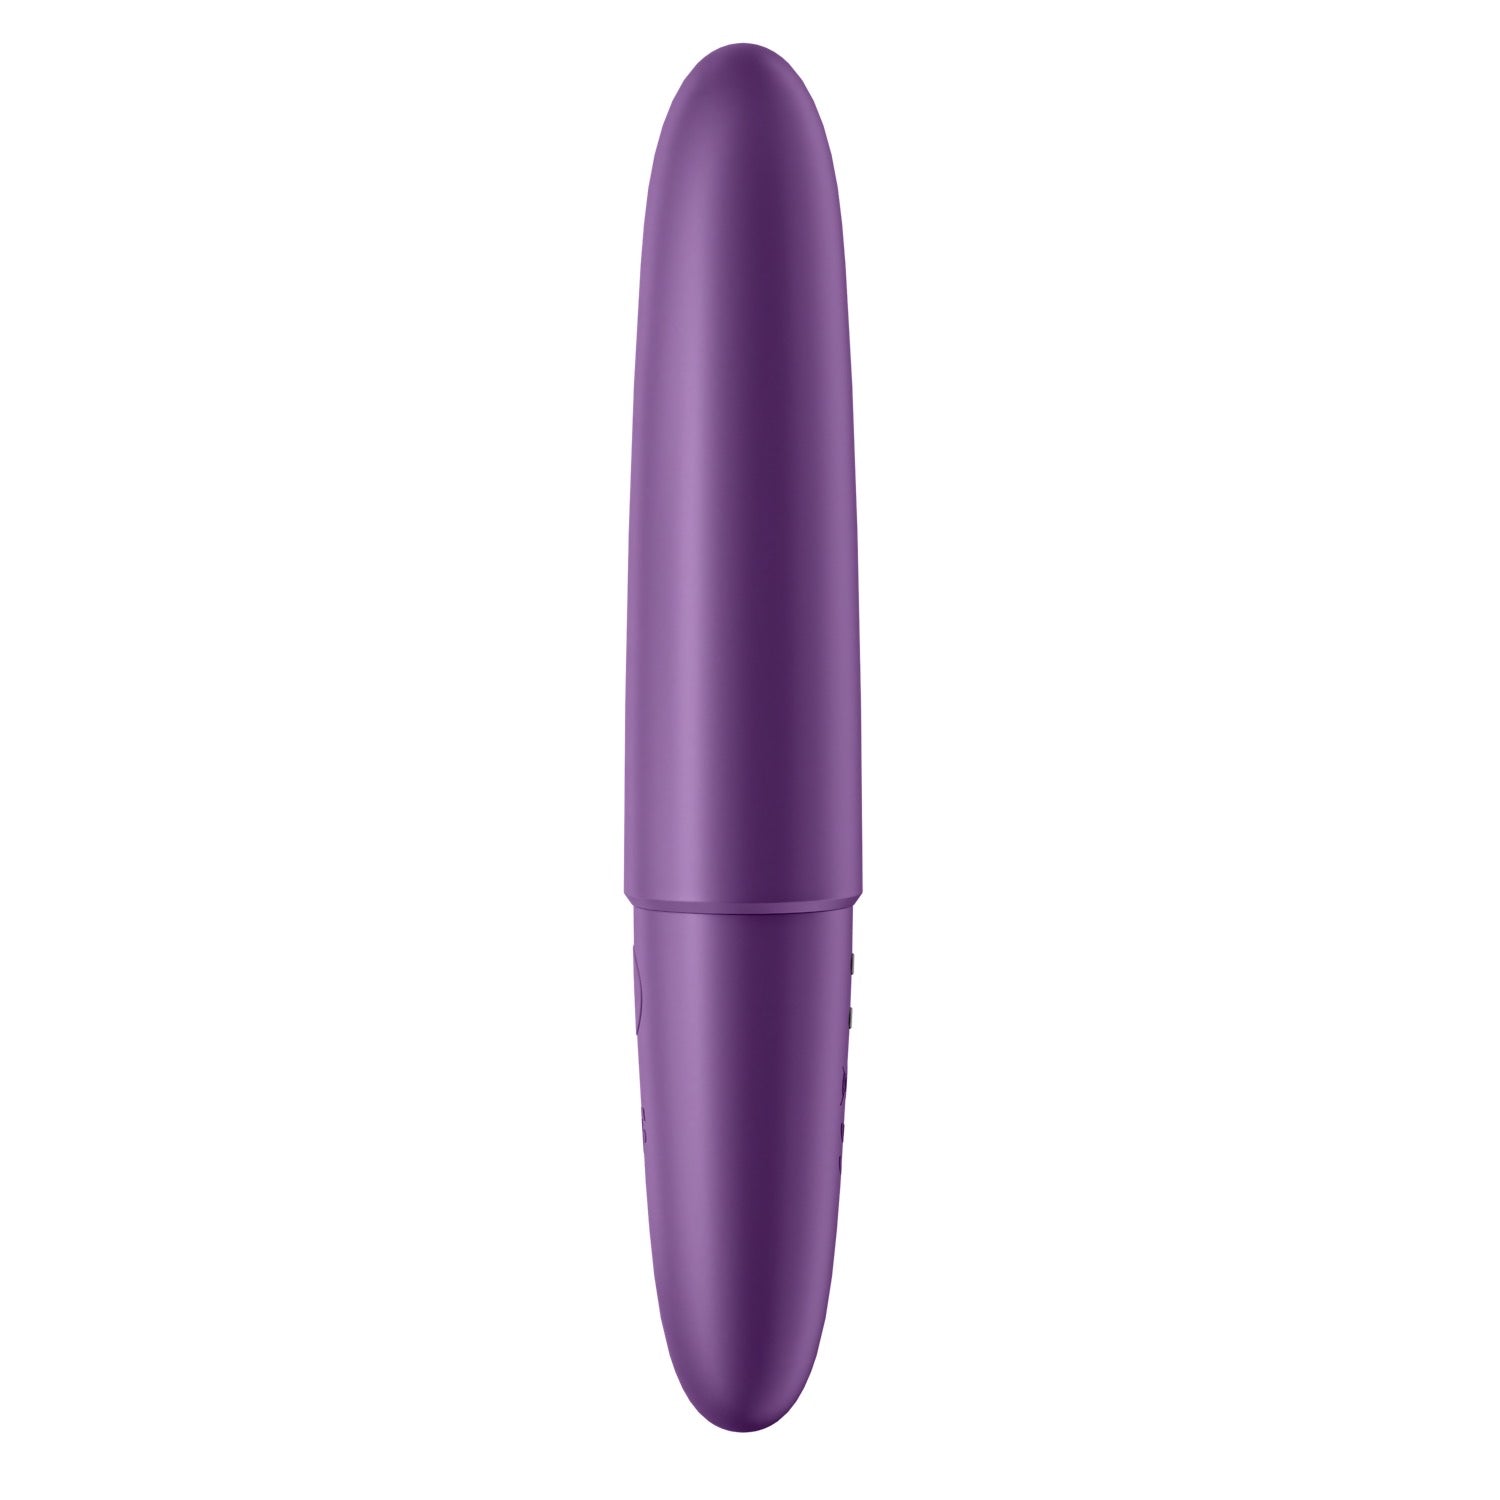 Satisfyer Ultra Power Bullet 6 - Purple by Satisfyer